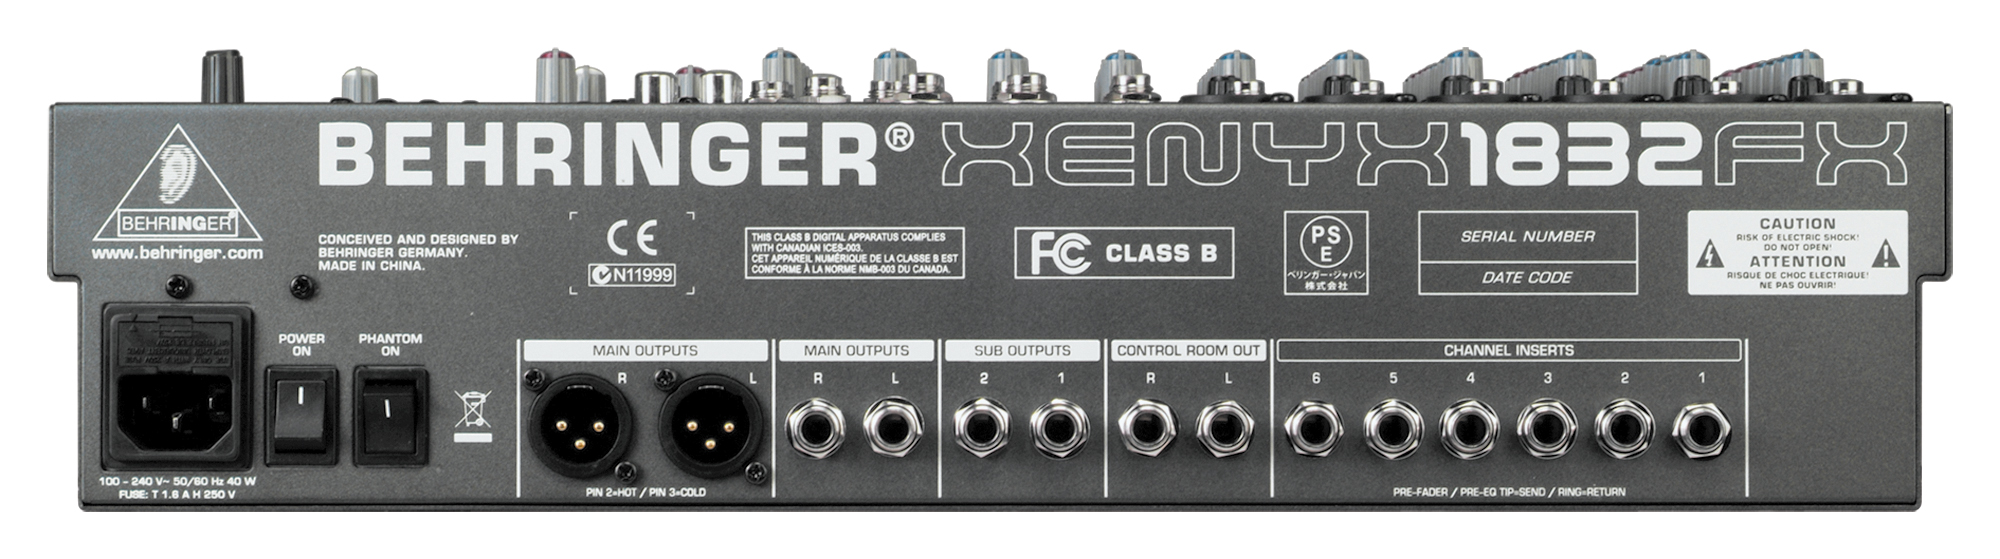 Behringer BEHRINGER MIXER UB 1832FX for studio band singer mic guitar amp speaker rack gig 